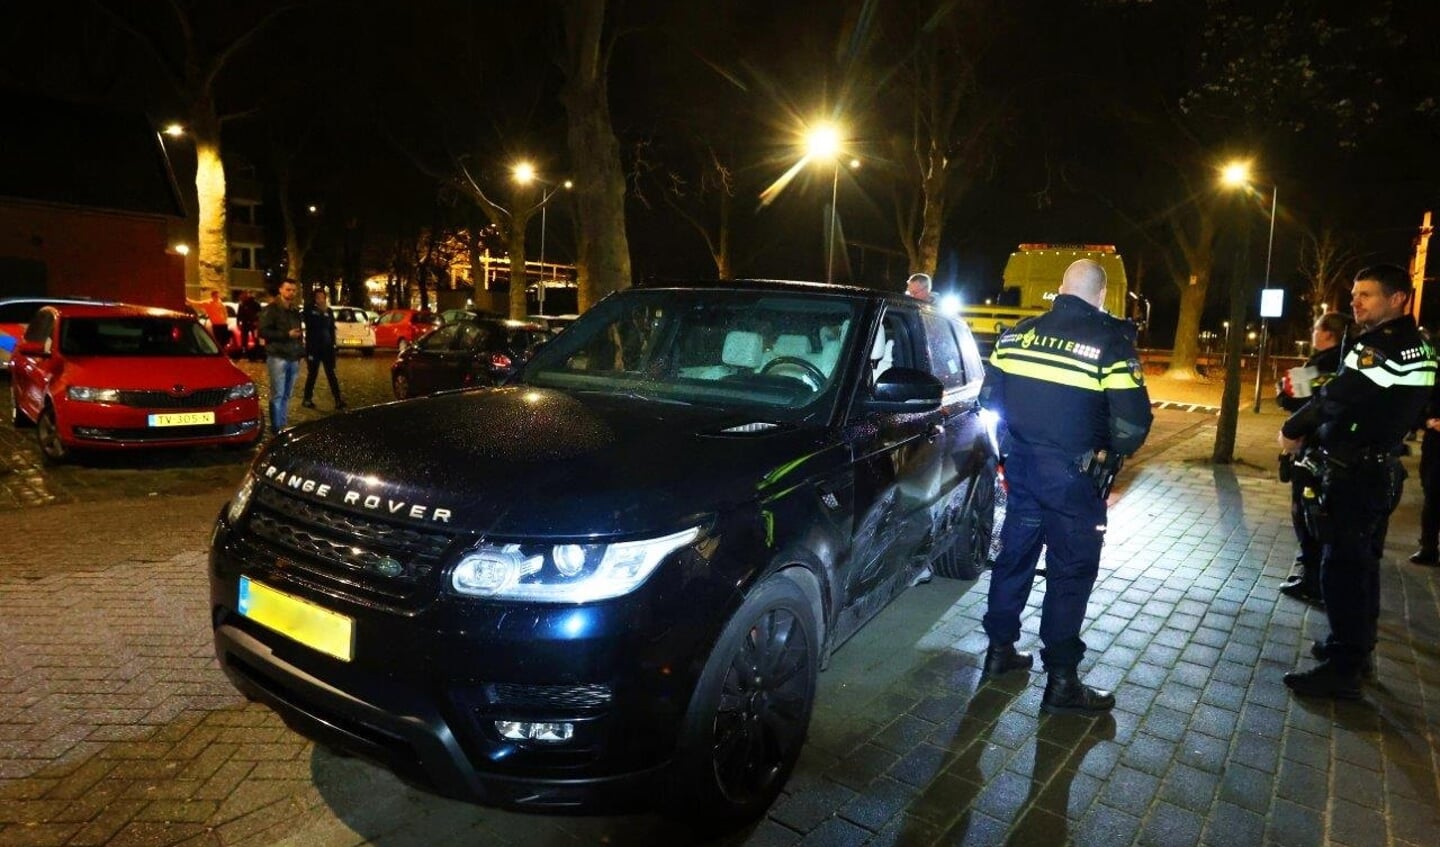 Donderdagavond rond 21.40 uur heeft de politie in Den Bosch een verdachte aangehouden na een wilde politie-achtervolging vanuit Limburg waarbij zo'n 25 politieauto's en ook een politiehelikopter betrokken waren.